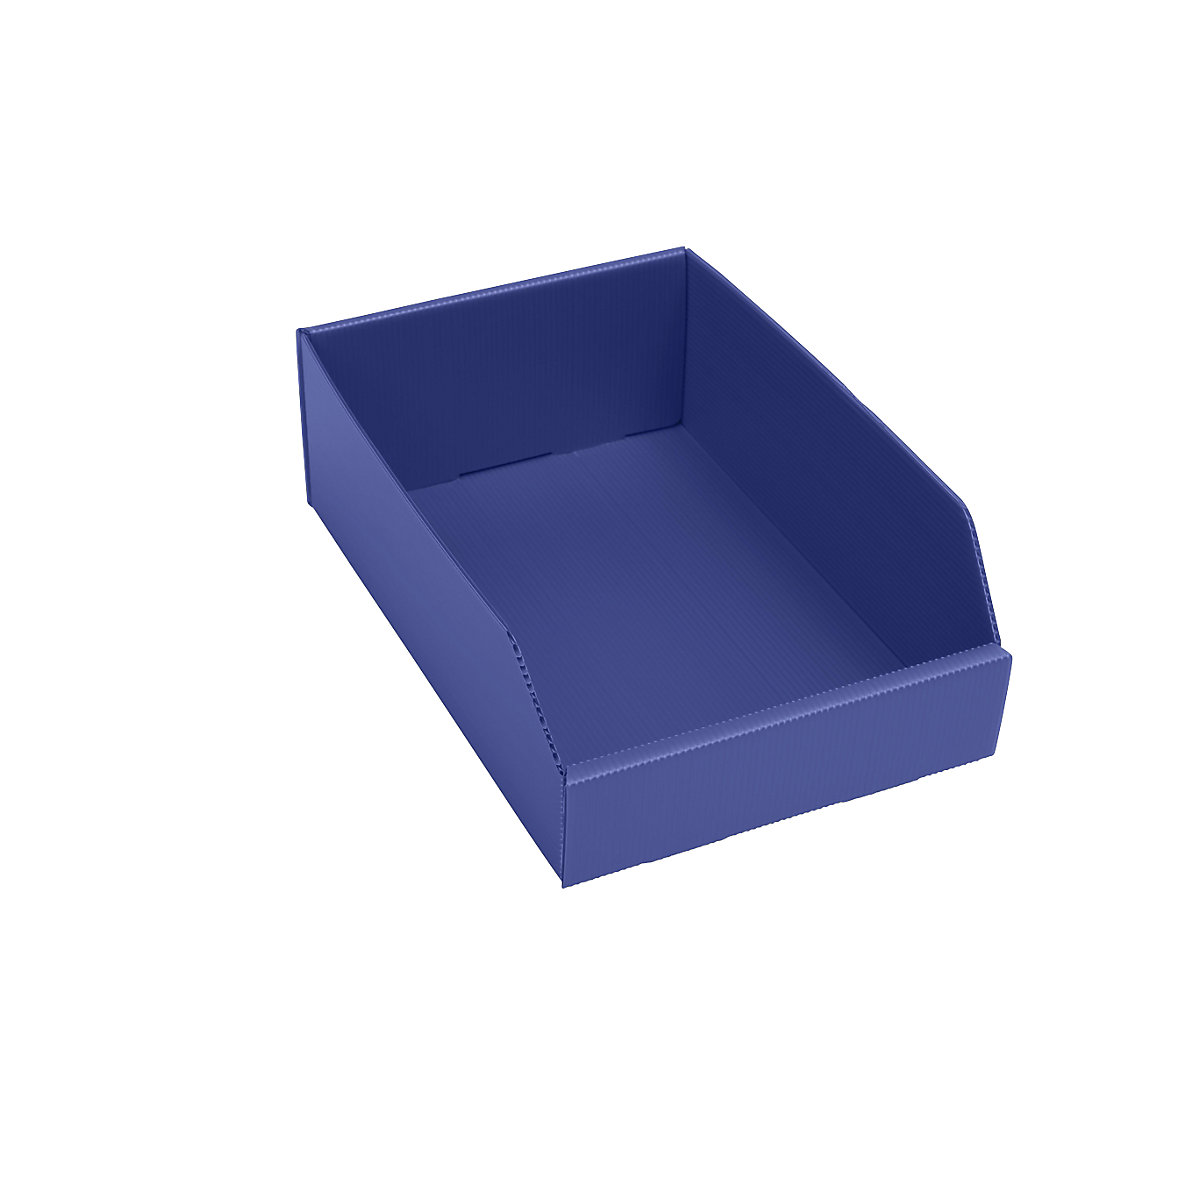 Cassettina in plastica per scaffali, pieghevole, lungh. x largh. x alt. 300x200x100 mm, blu, conf. da 25 pz.-3